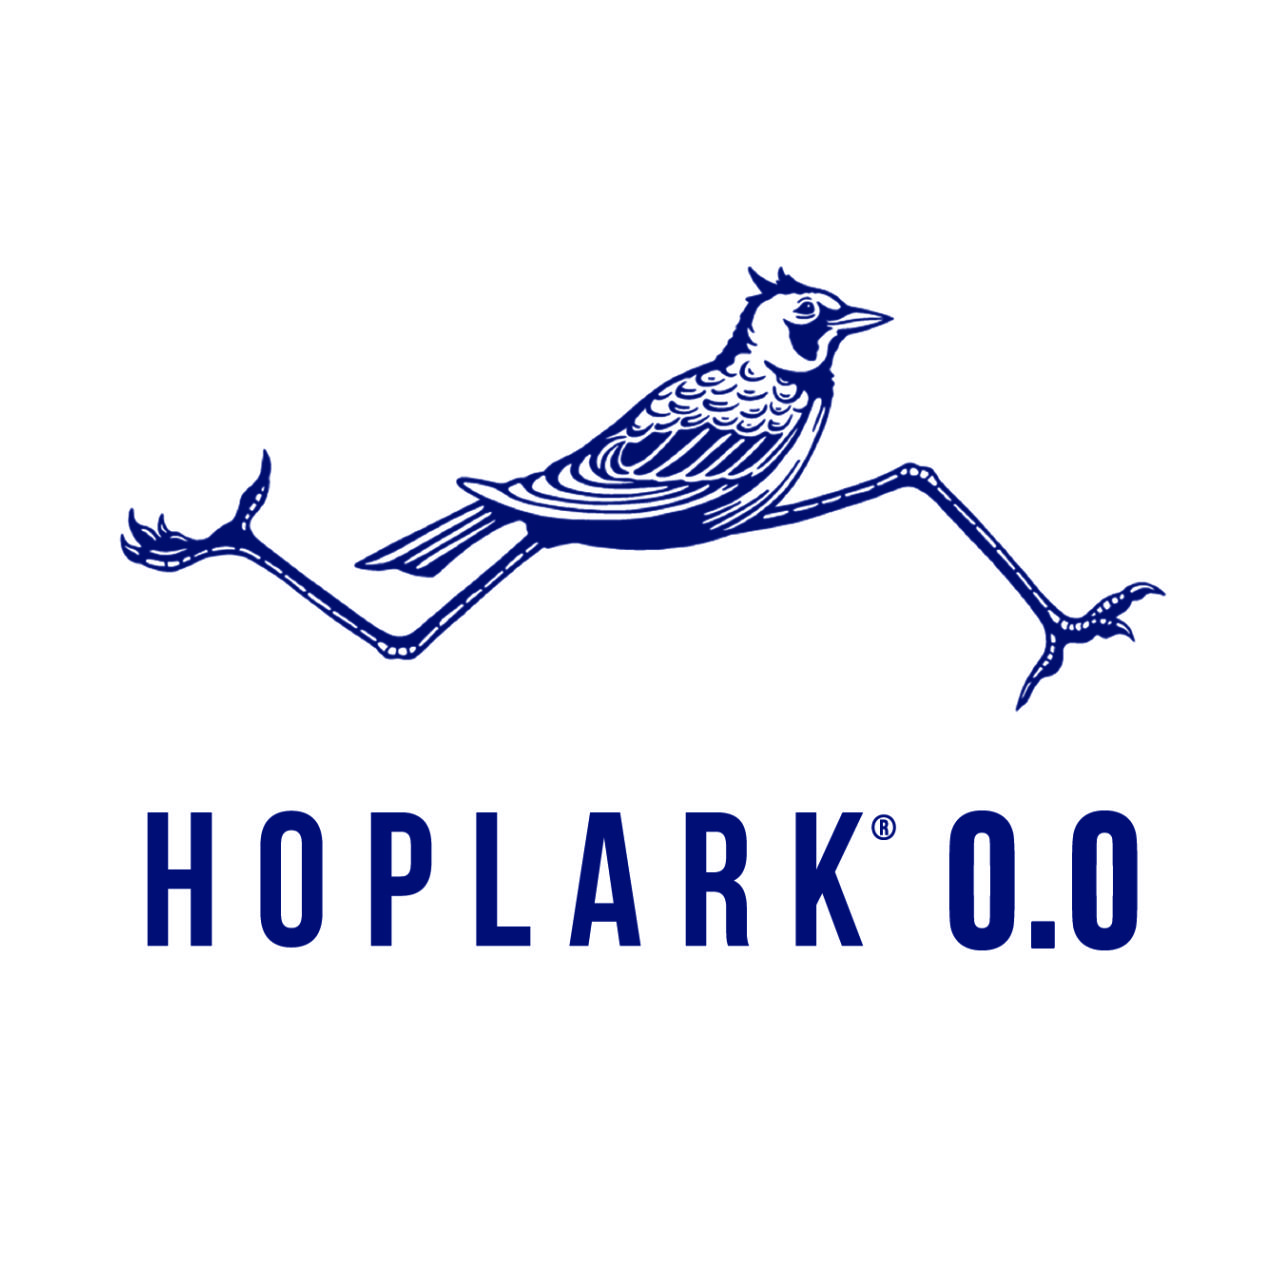 Hoplark